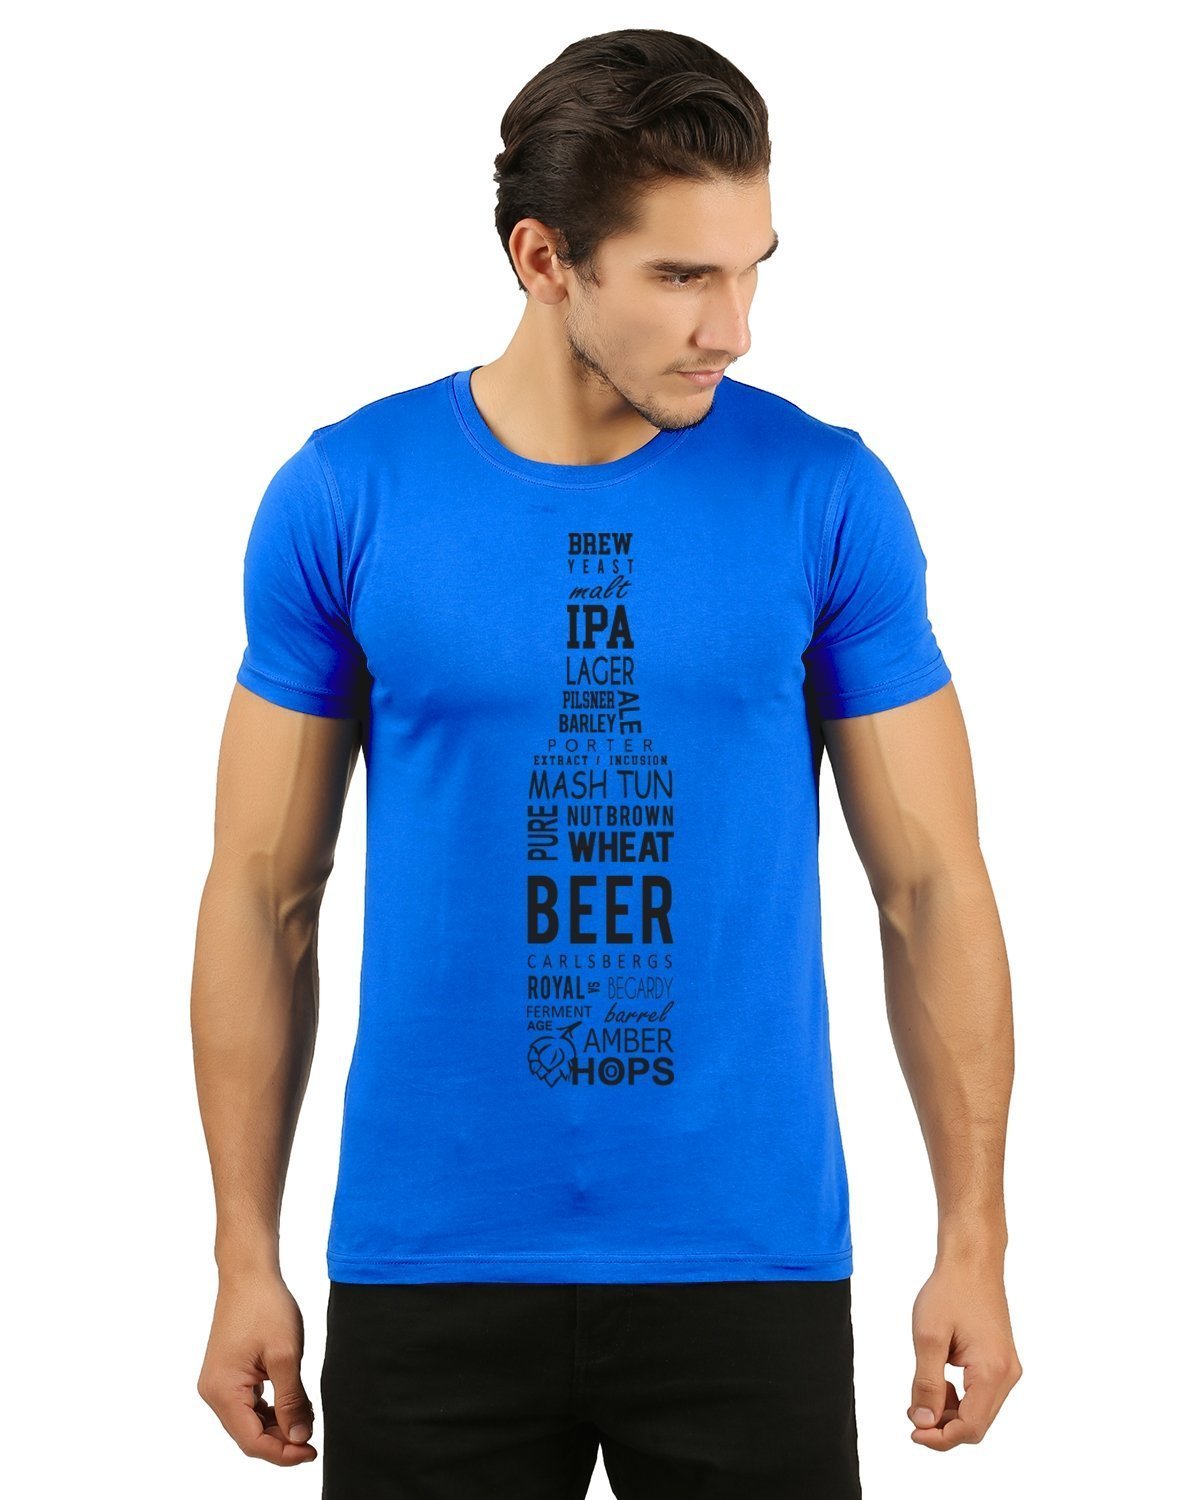 Royalblue beer printed tshirt